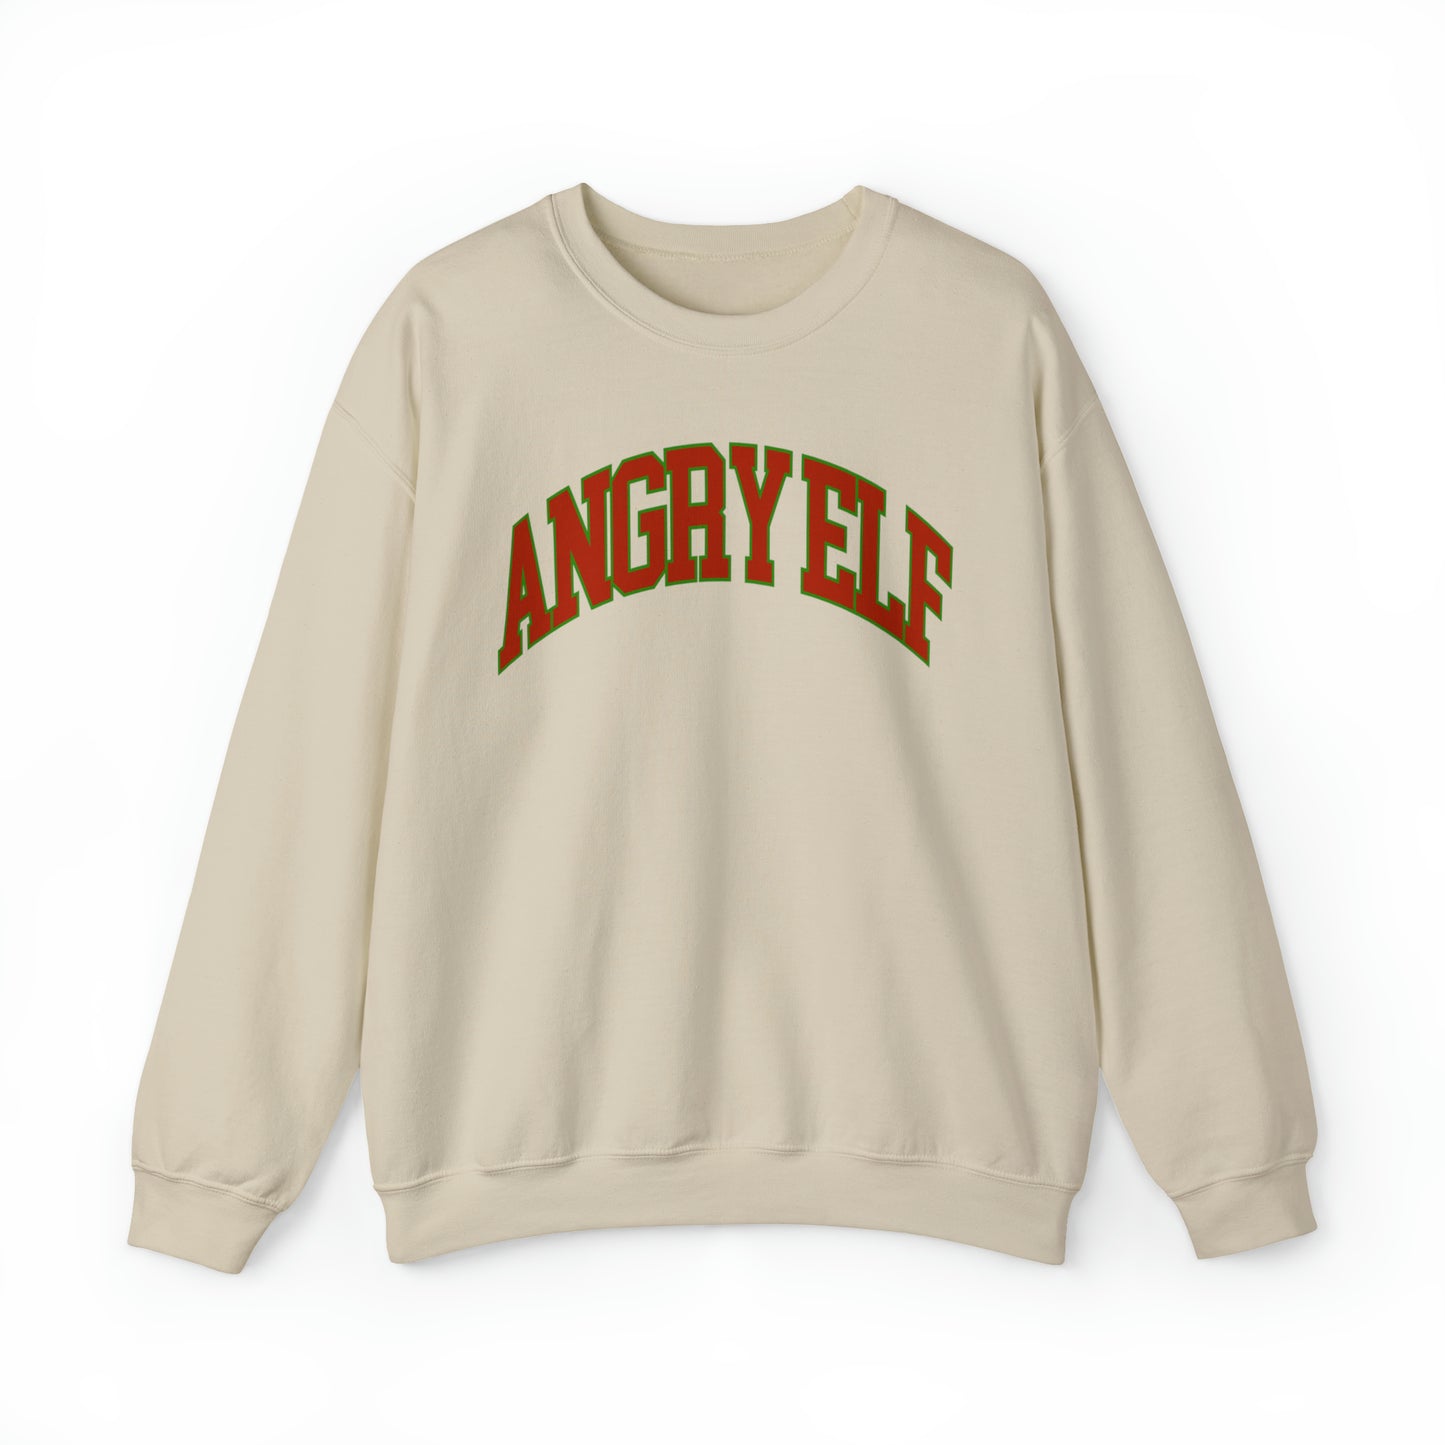 "Angry Elf" Christmas Crewneck Sweatshirt